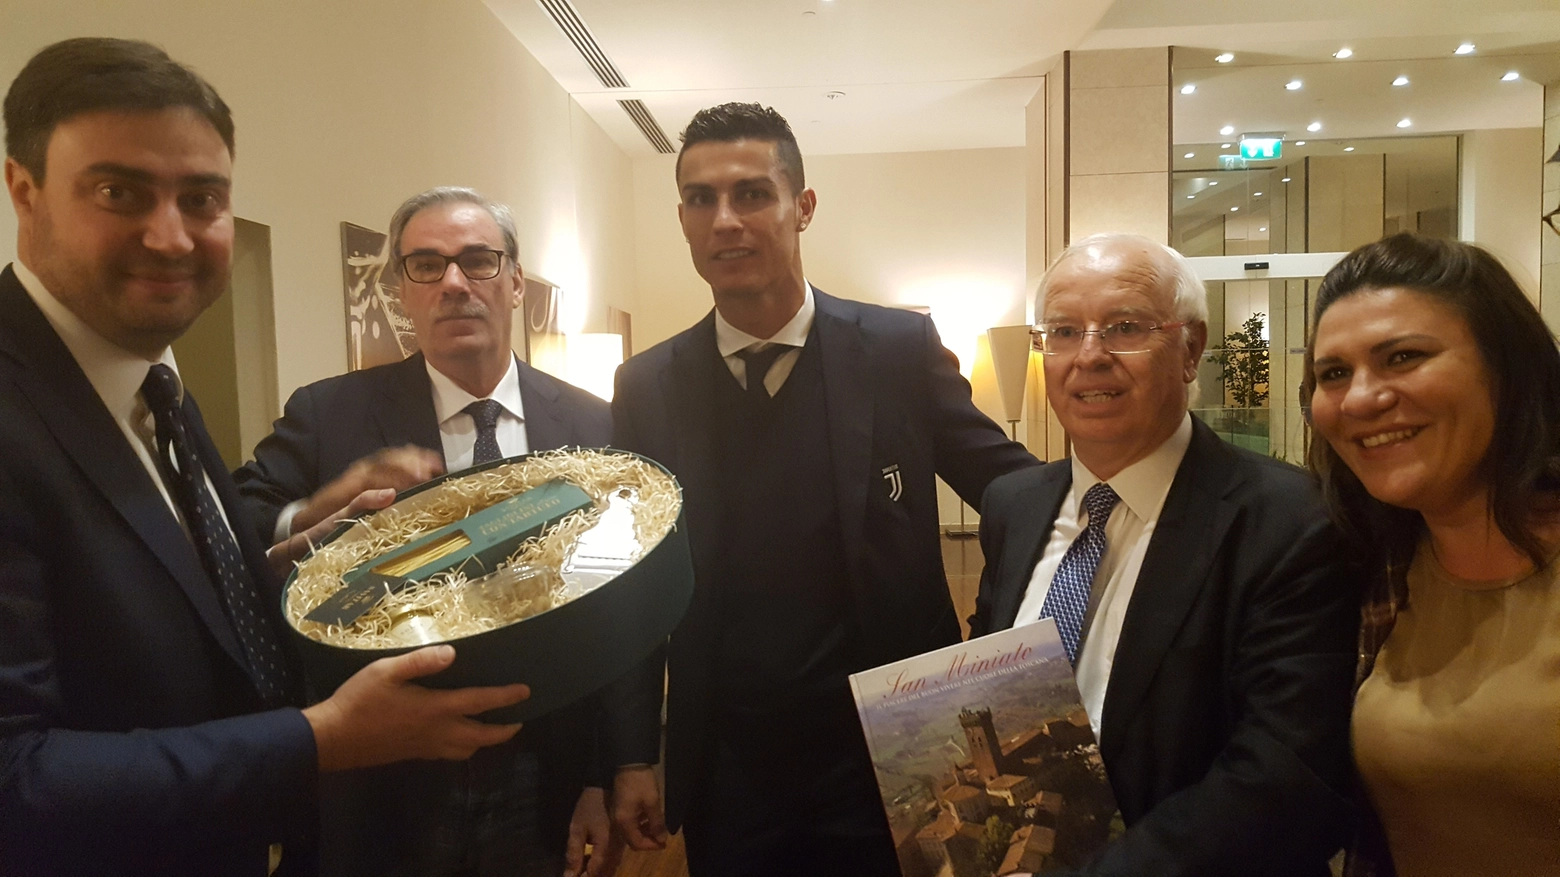 La consegna del tartufo di San Miniato a Ronaldo